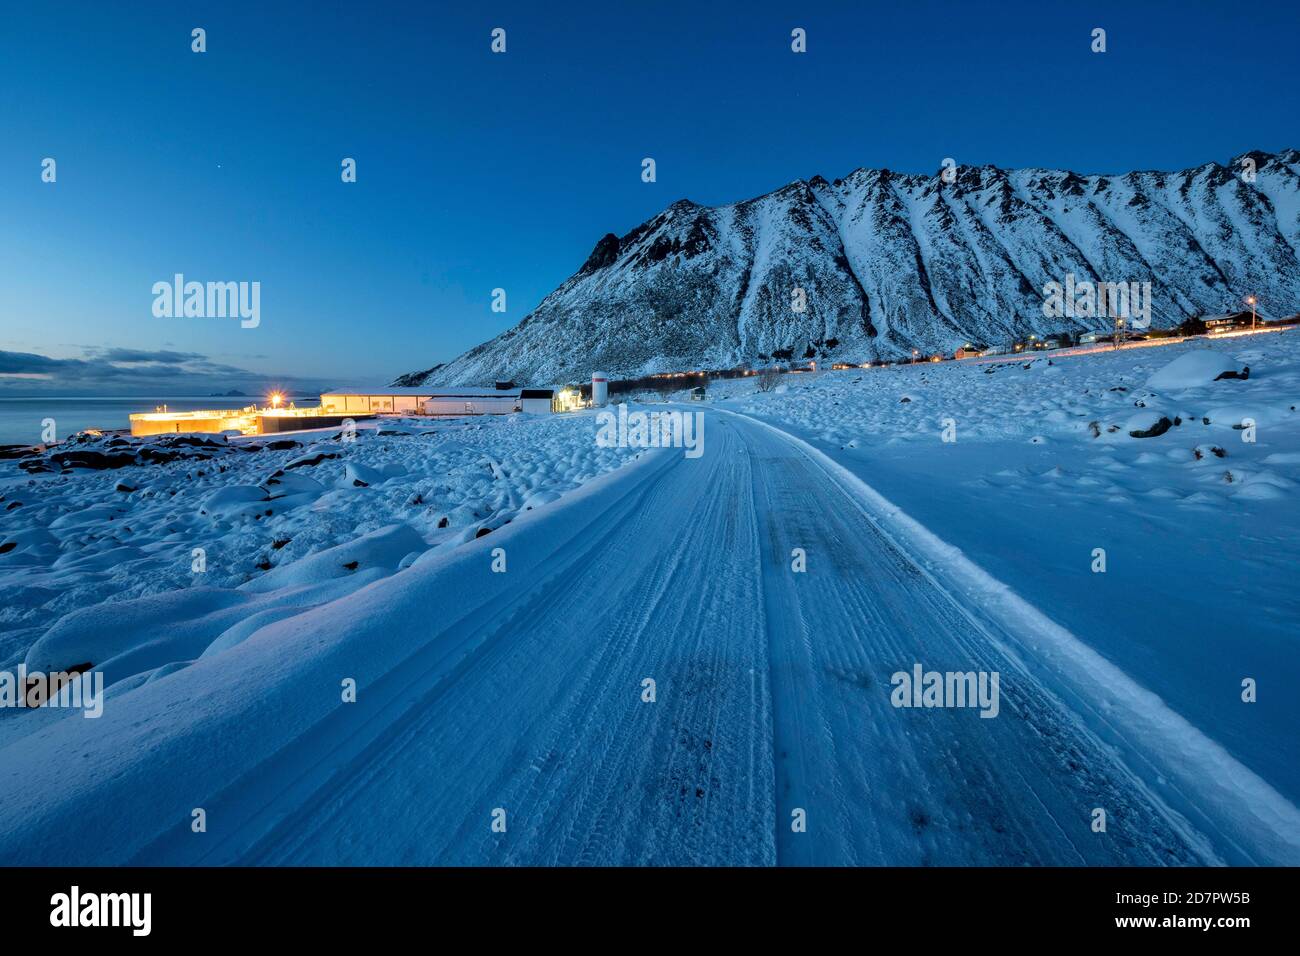 Route enneigée glacée, village éclairé au crépuscule, bâtiments résidentiels et industriels, Nordland, Lofoten, Norvège Banque D'Images